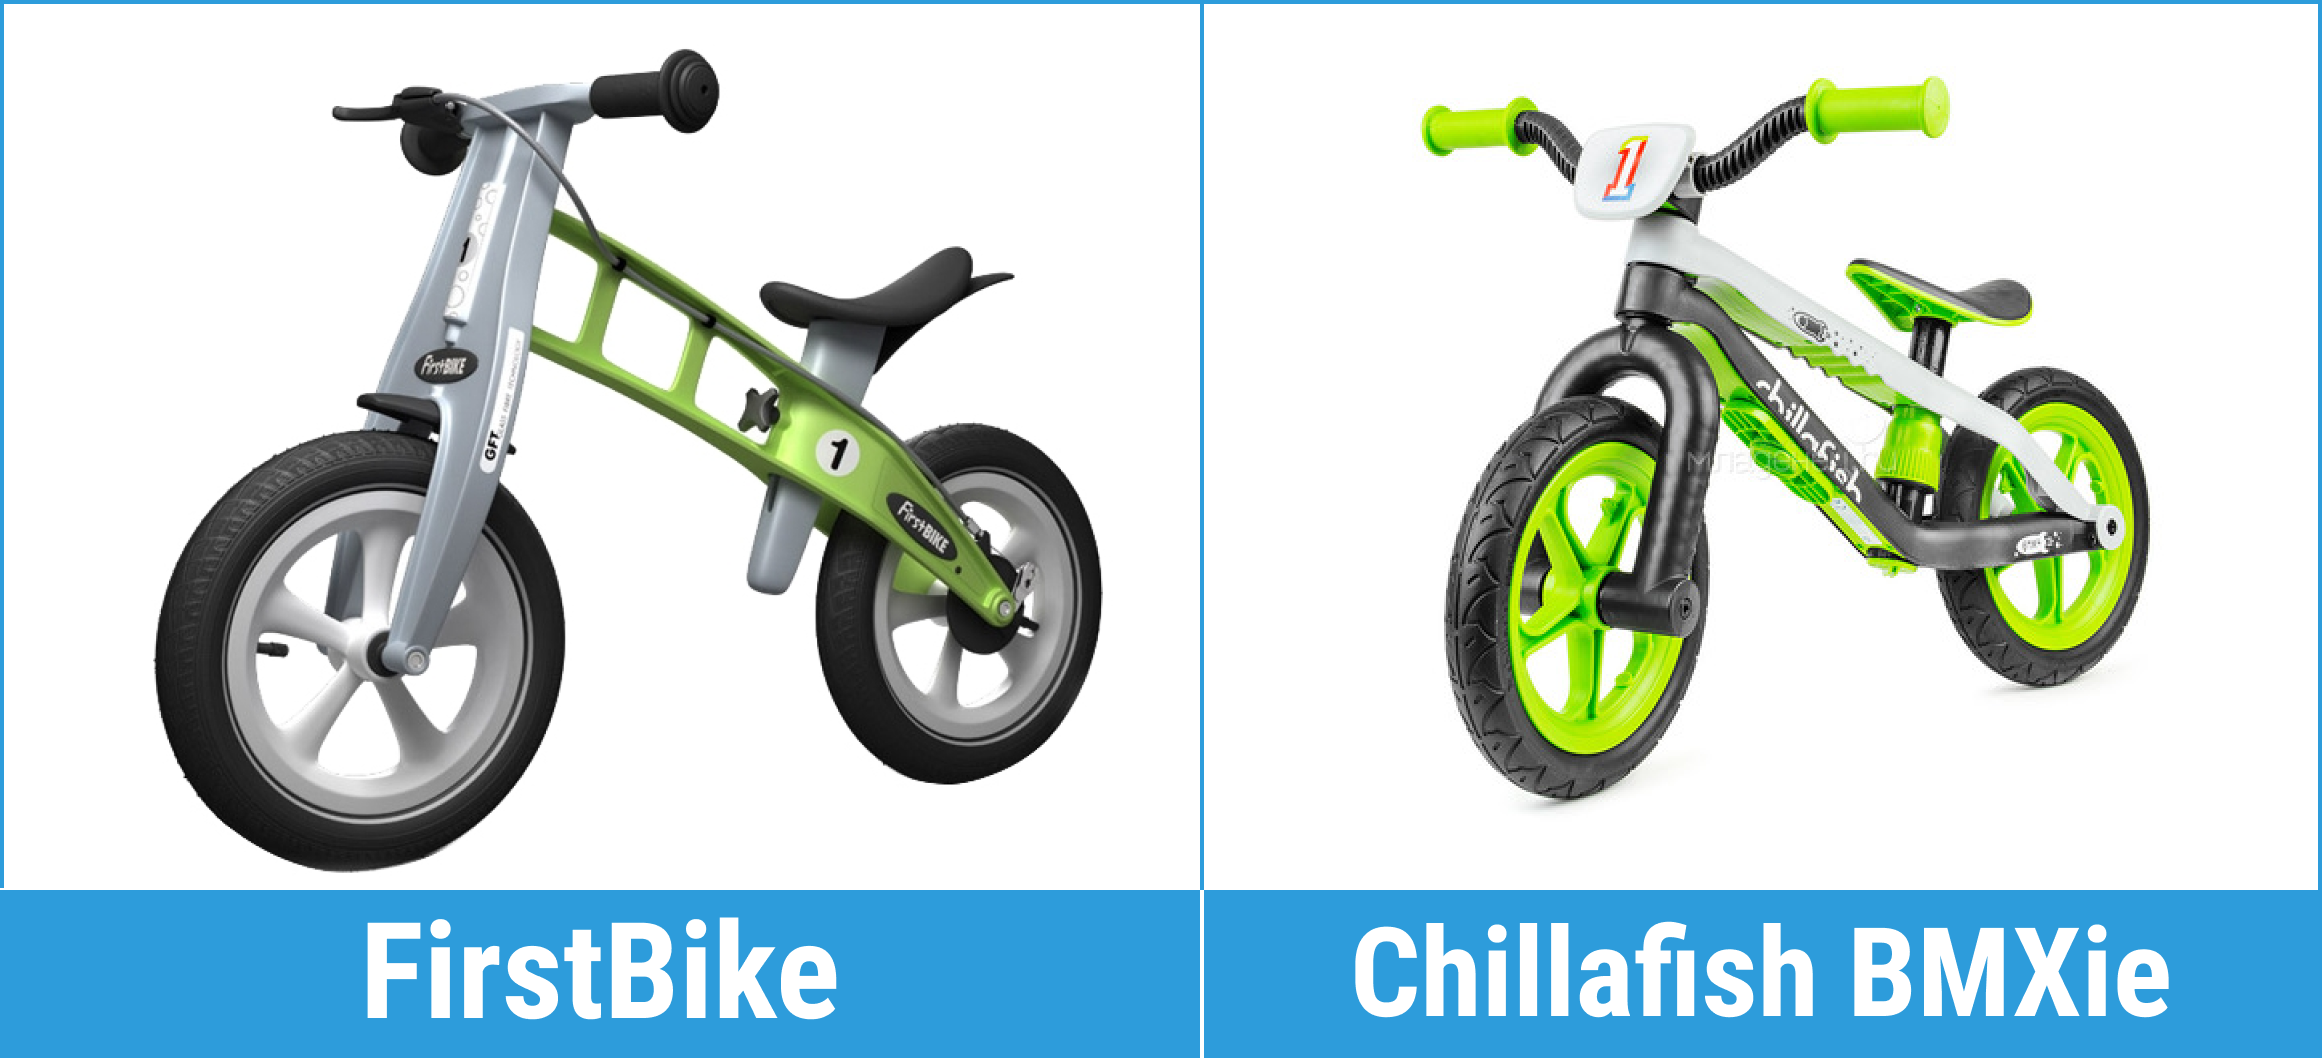 Беговел нужен ли. Зачем нужен беговел. Велосипед без колес для детей как называется. Велосипед без педалей взрослый как называется. Велосипед без педалей и сиденья как называется.